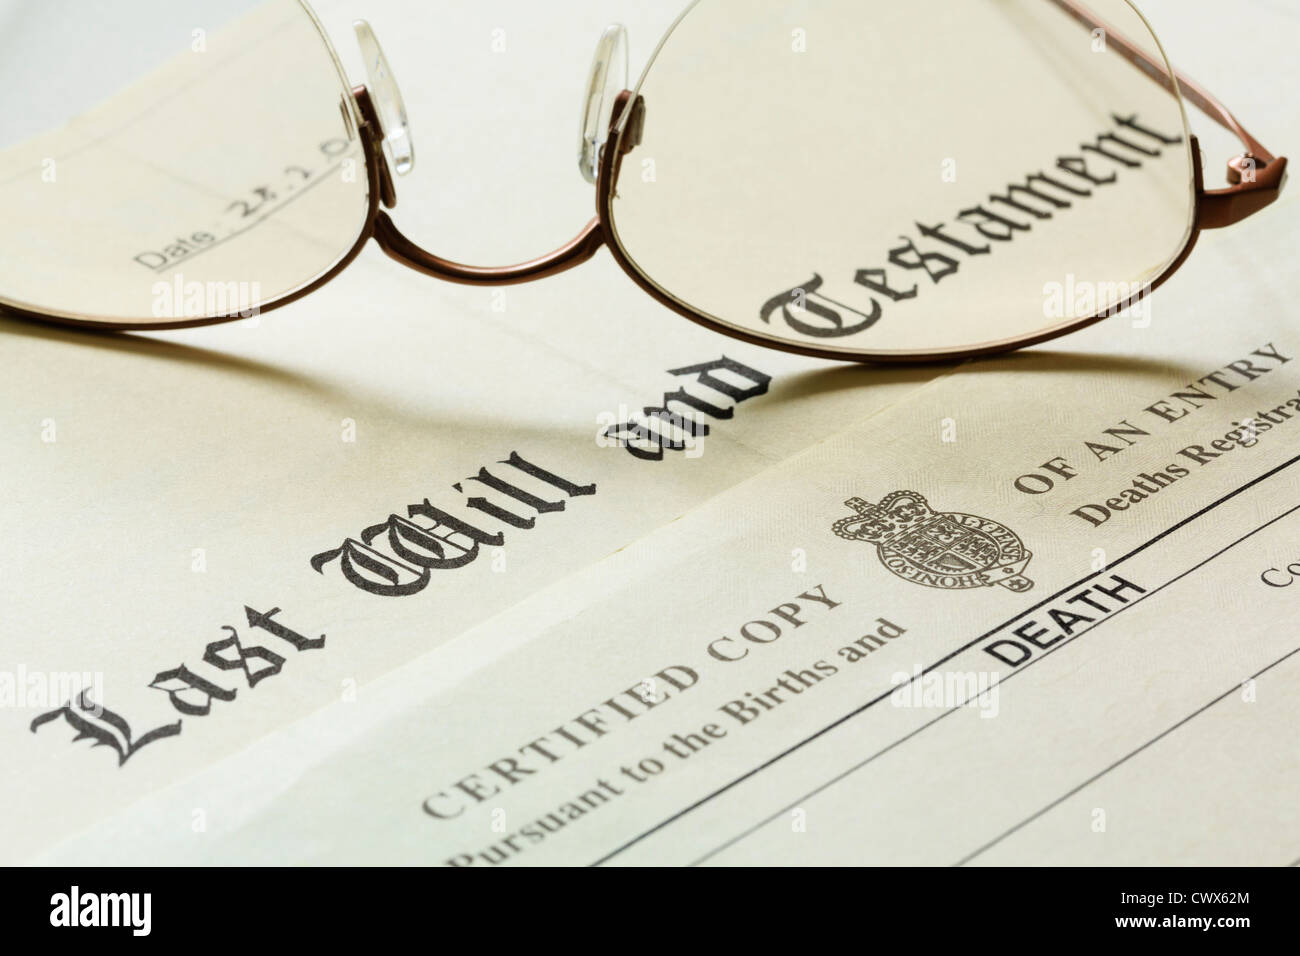 Dernier Testament et testament avec un certificat de décès et une paire de lunettes à bords métalliques. Angleterre Royaume-Uni Grande-Bretagne Banque D'Images